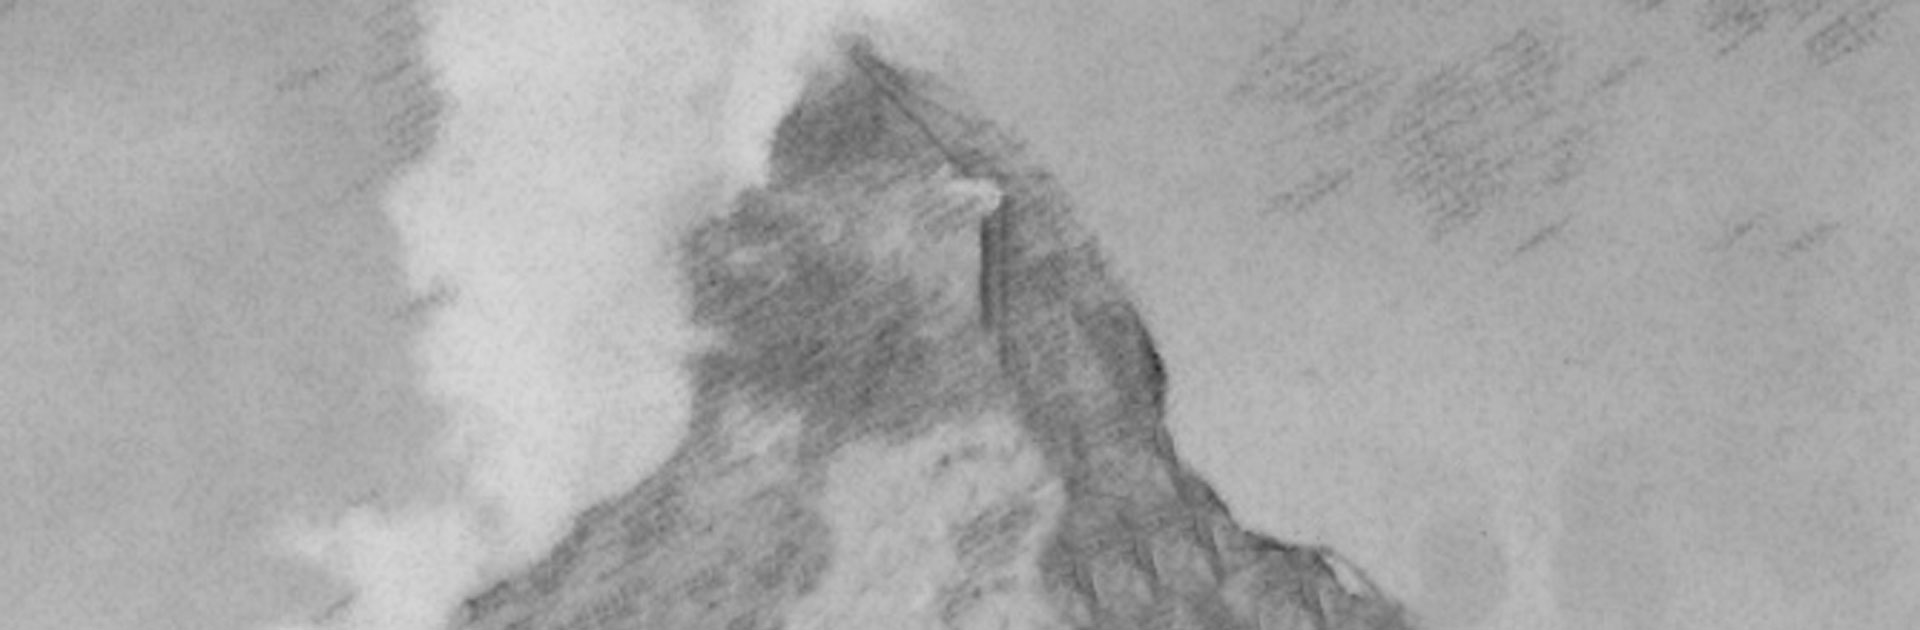 Empor! Der Wettlauf zum Gipfel des Matterhorn